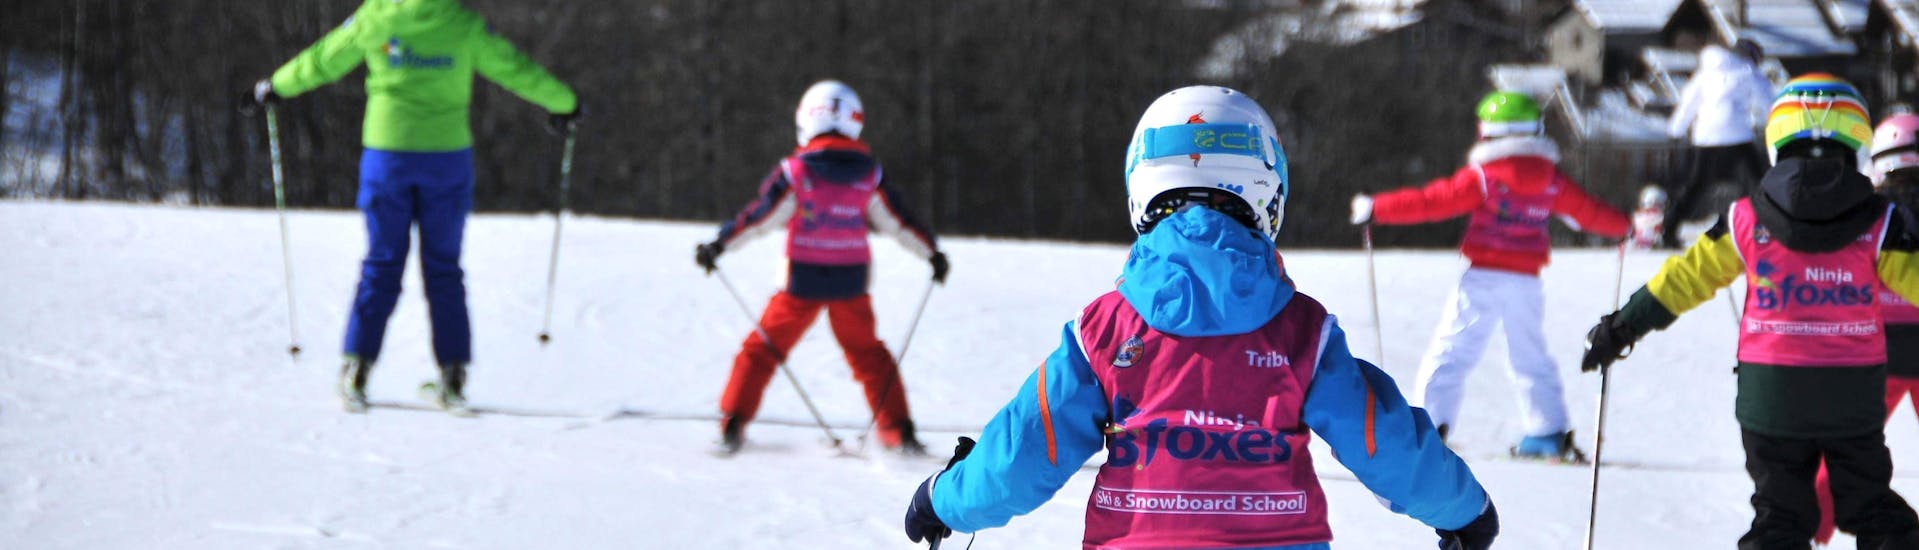 Kinderen leren skiën in Skilessen voor kinderen (4-12 j.) - Alle niveaus georganiseerd door de skischool Scuola di Sci B.foxes.